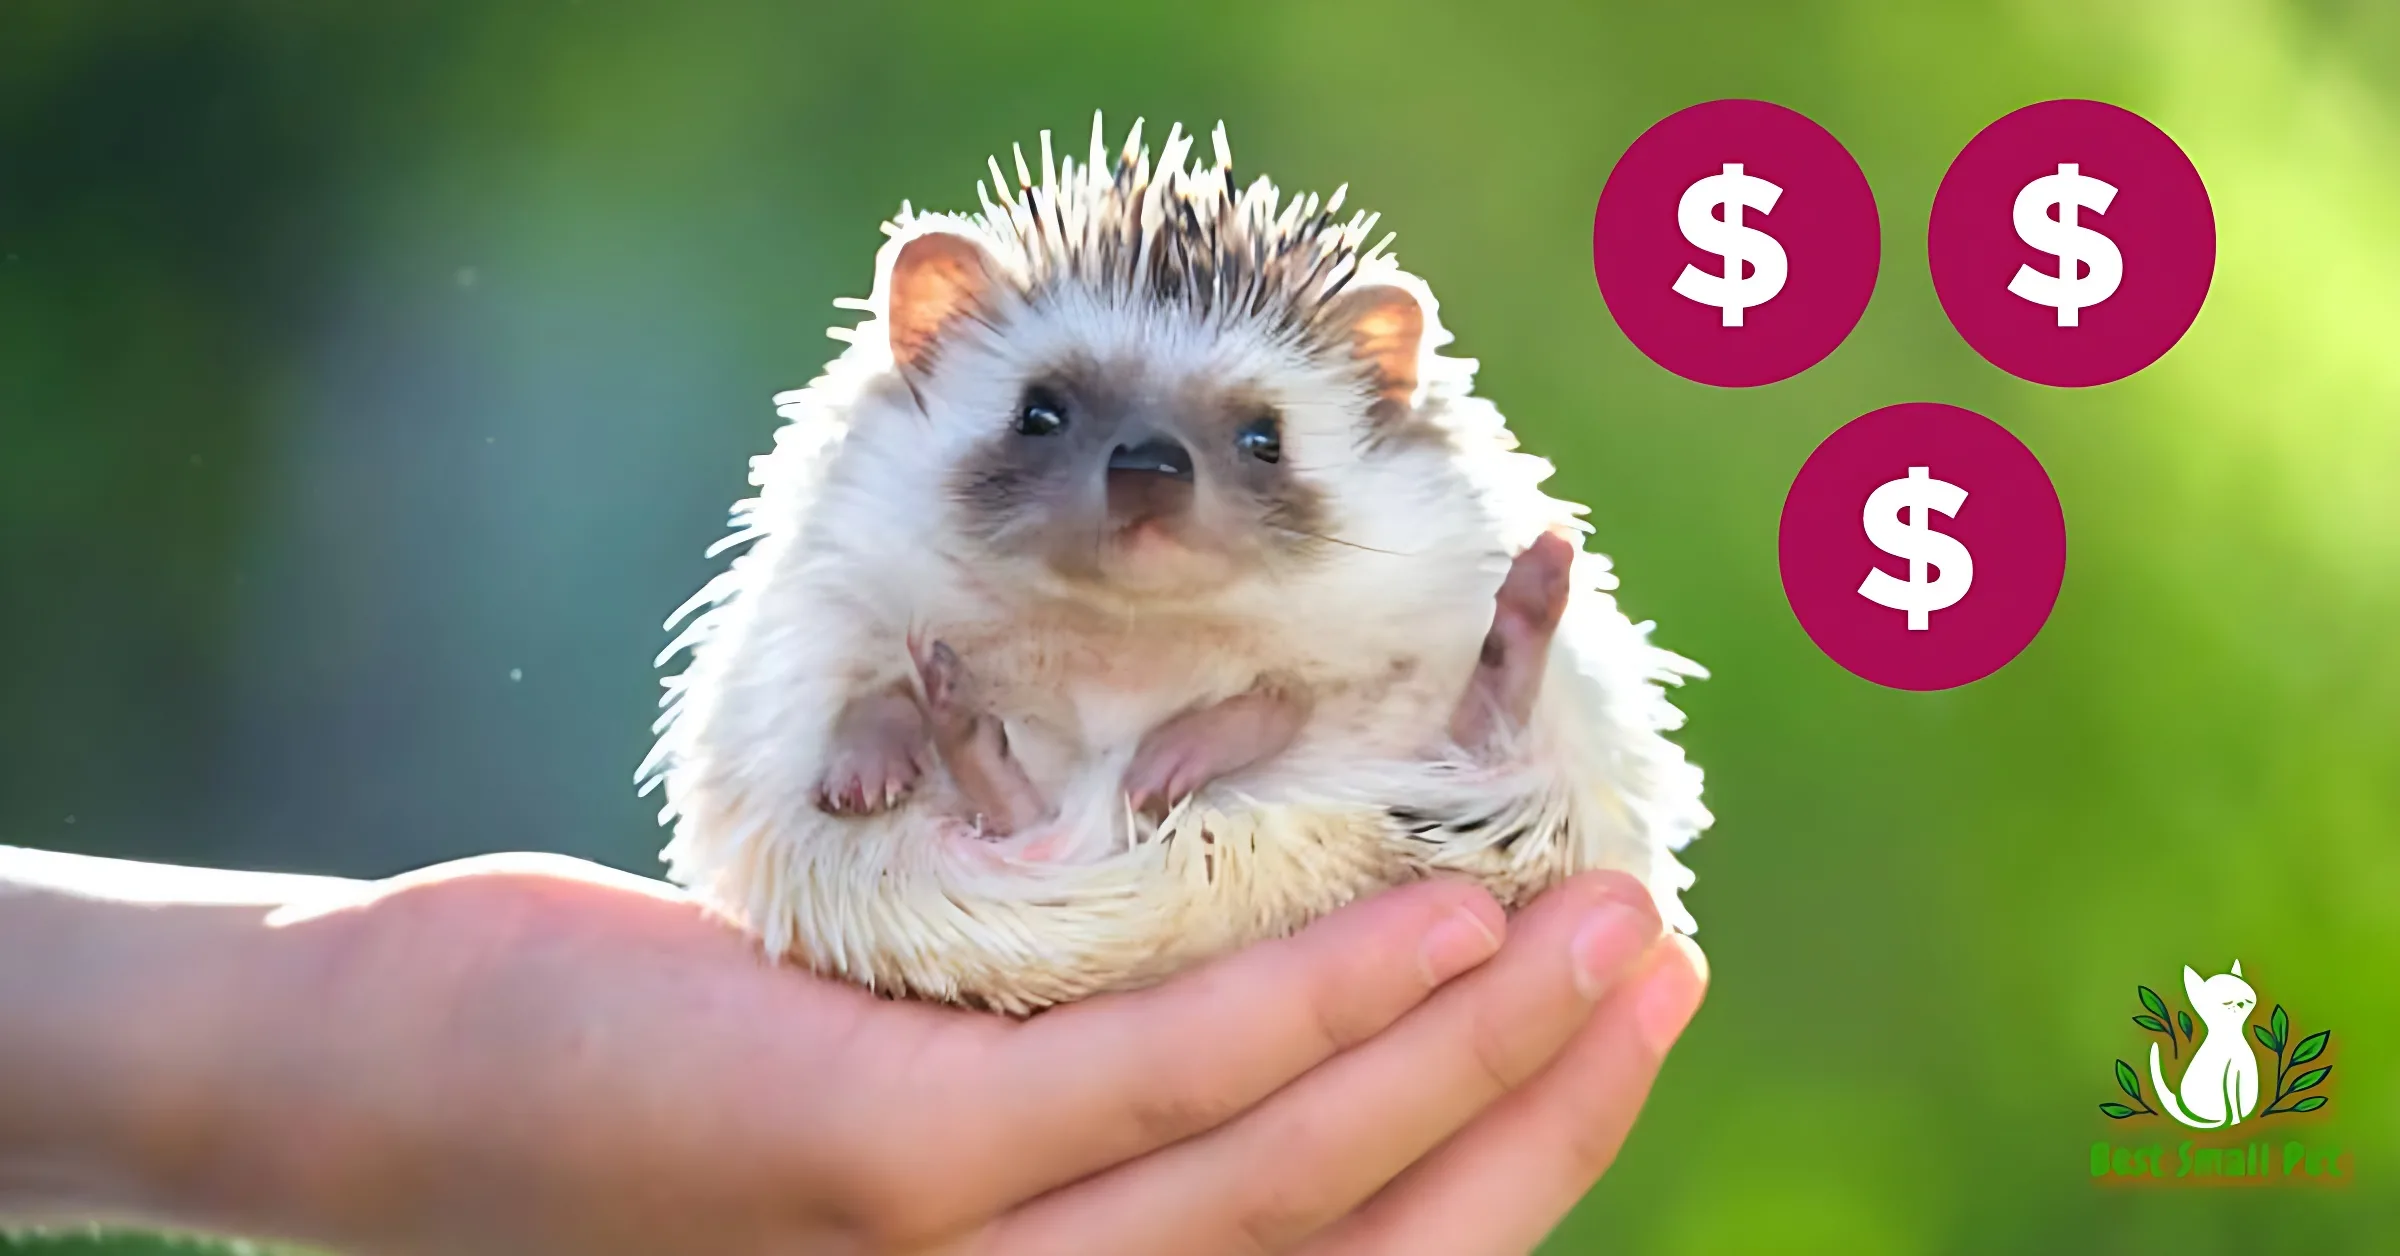 Pet Hedgehogs cost